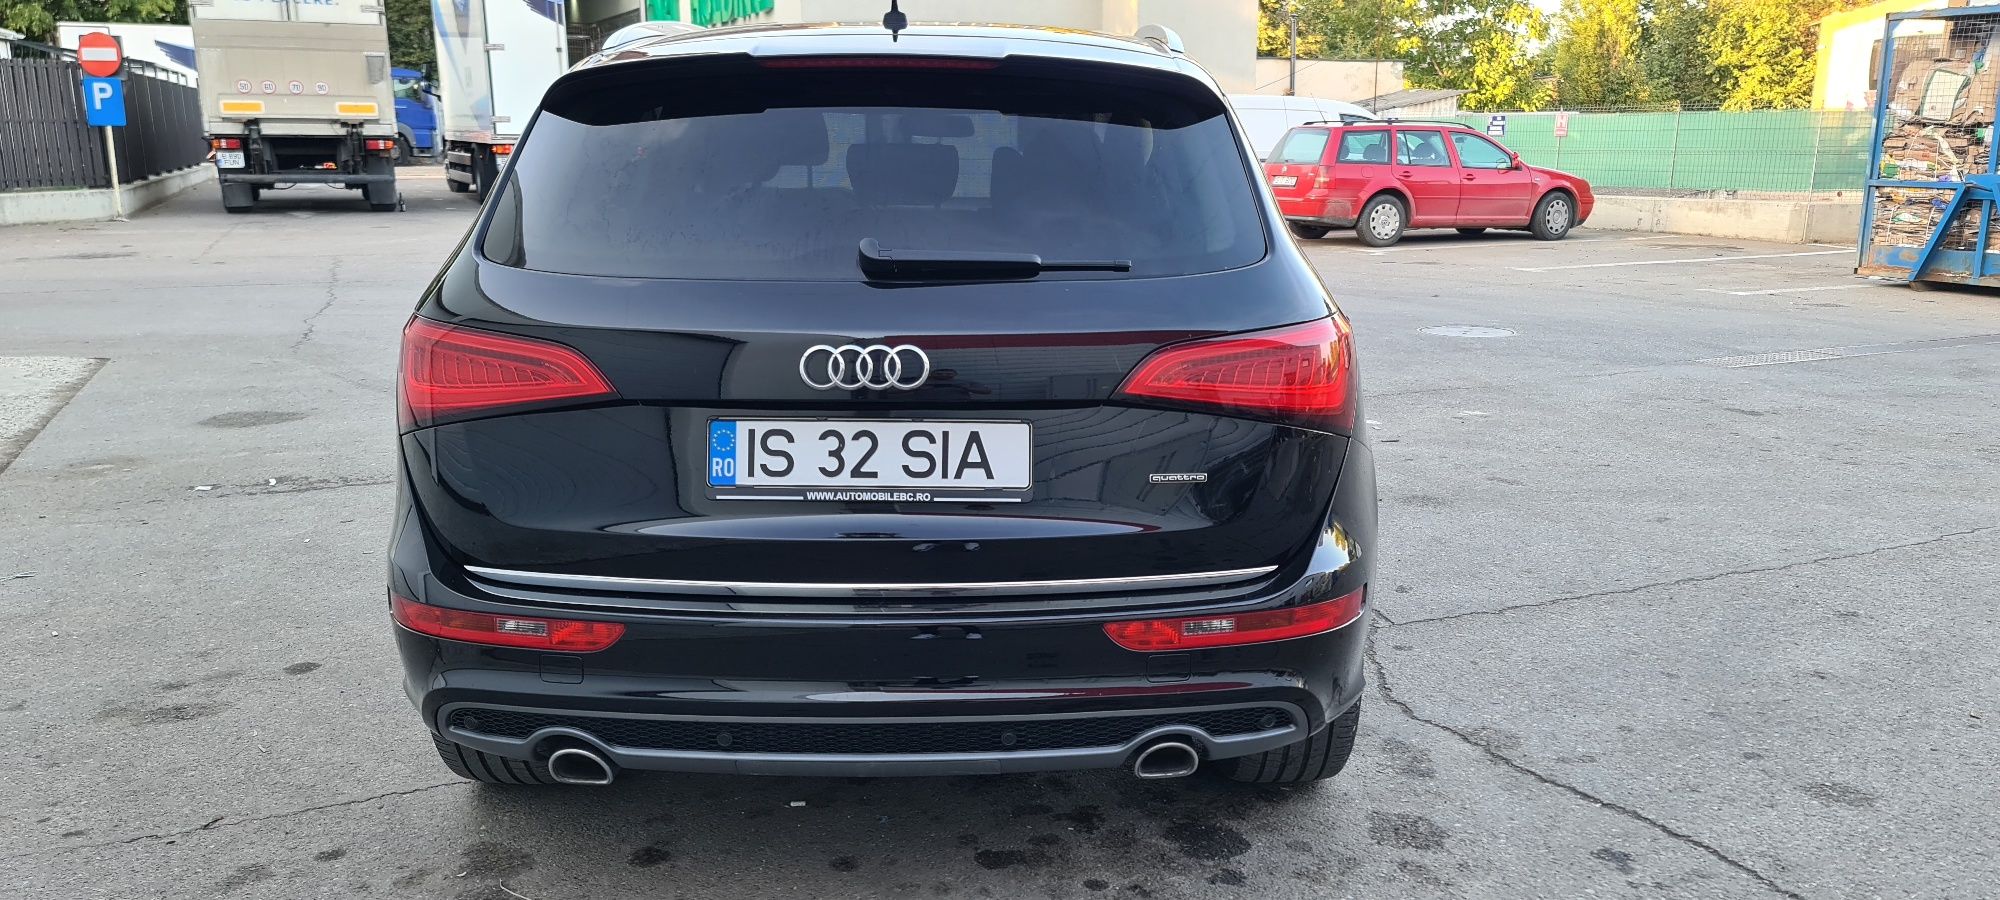 Audi Q5 2016 Euro6